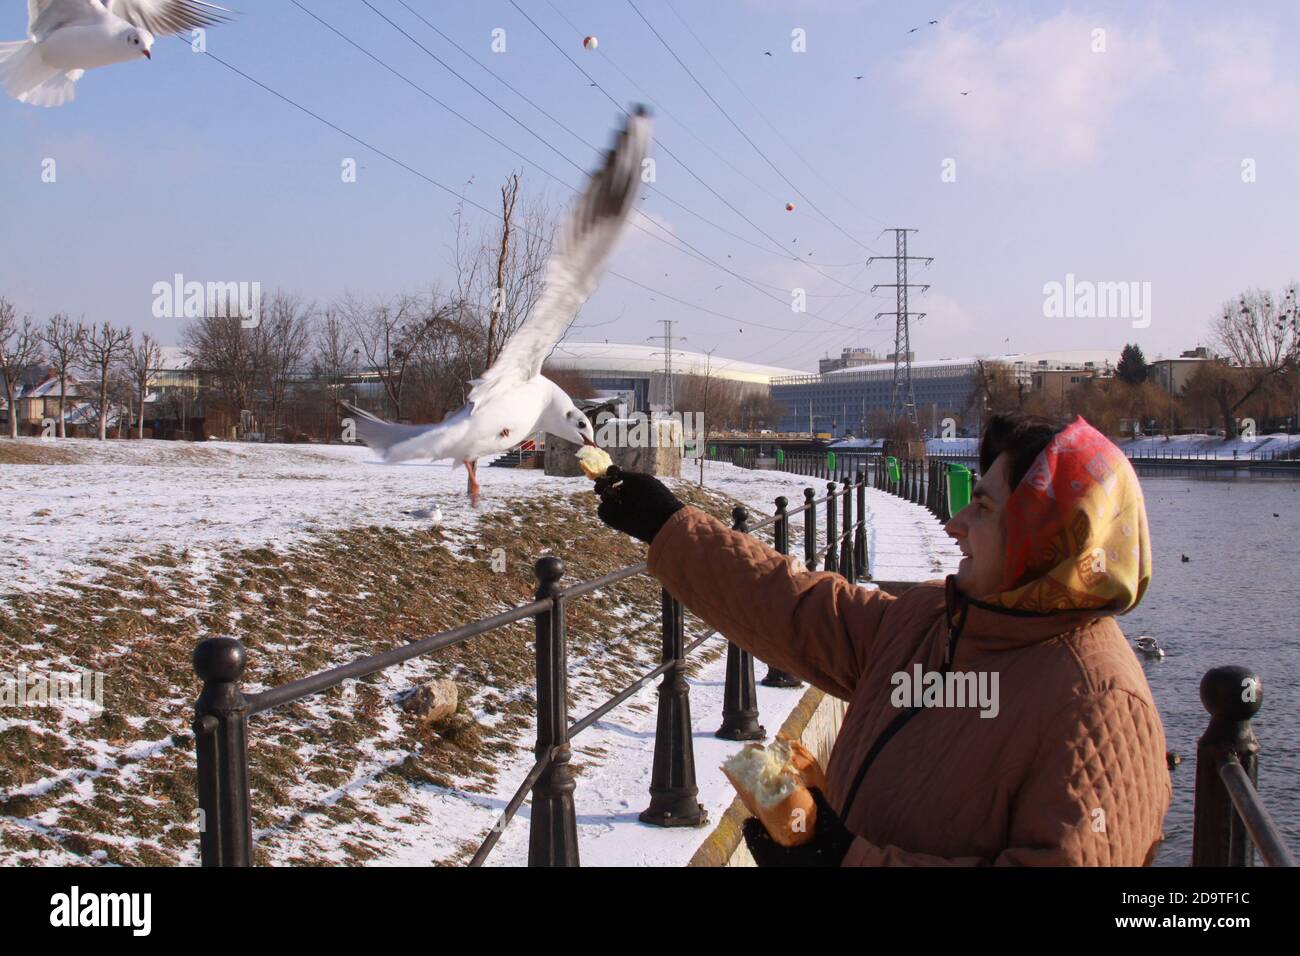 Cluj-Napoca, Rumänien - 15. Januar 2019: Schwarze Möwen stehlen Brot aus der Hand der Frau. Wildvogel im Flug im kalten Winter. Fliegender Schwarzkopf Stockfoto